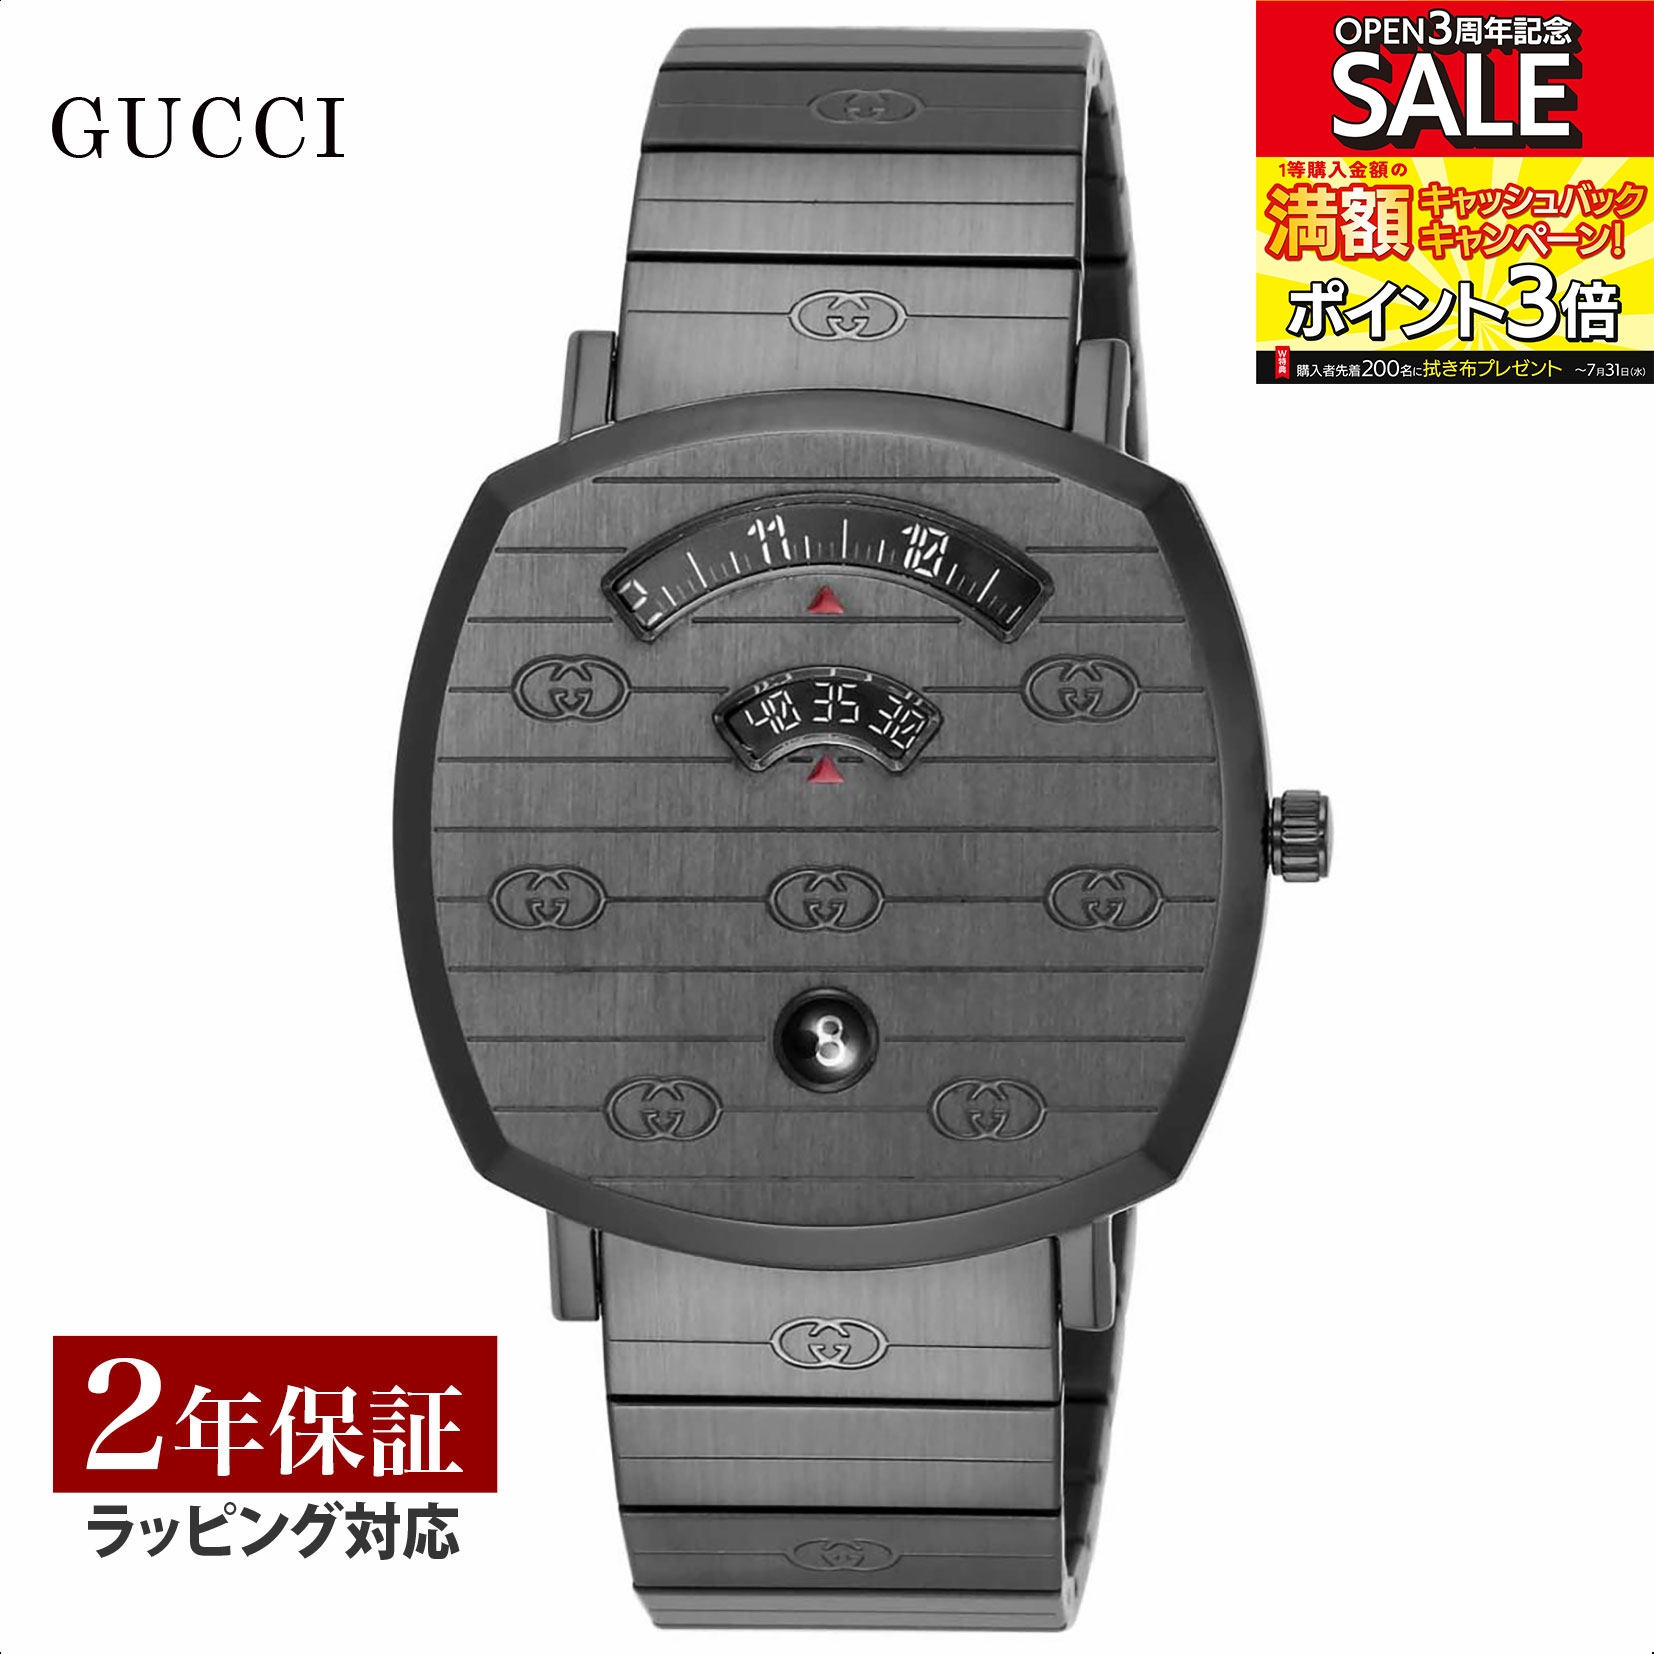 【当店限定】 グッチ GUCCI メンズ レディース 時計 GRIP グリップ クォーツ ユニセックス ブラック YA157429 時計 腕時計 高級腕時計 ブランド